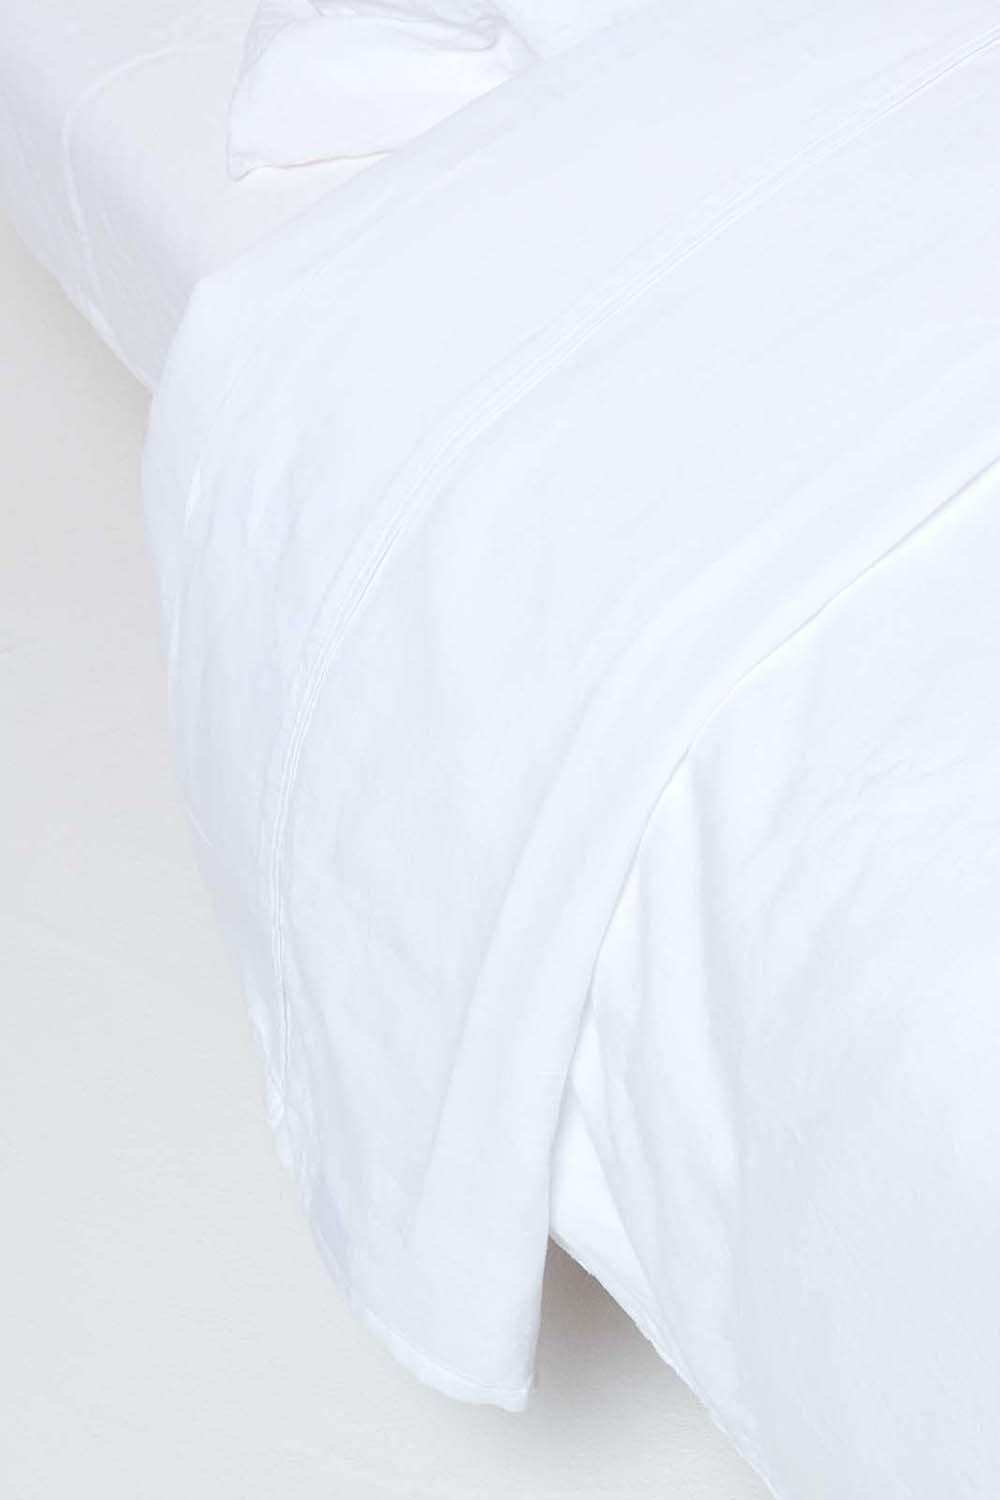 Luxury Soft Linen Flat Sheet